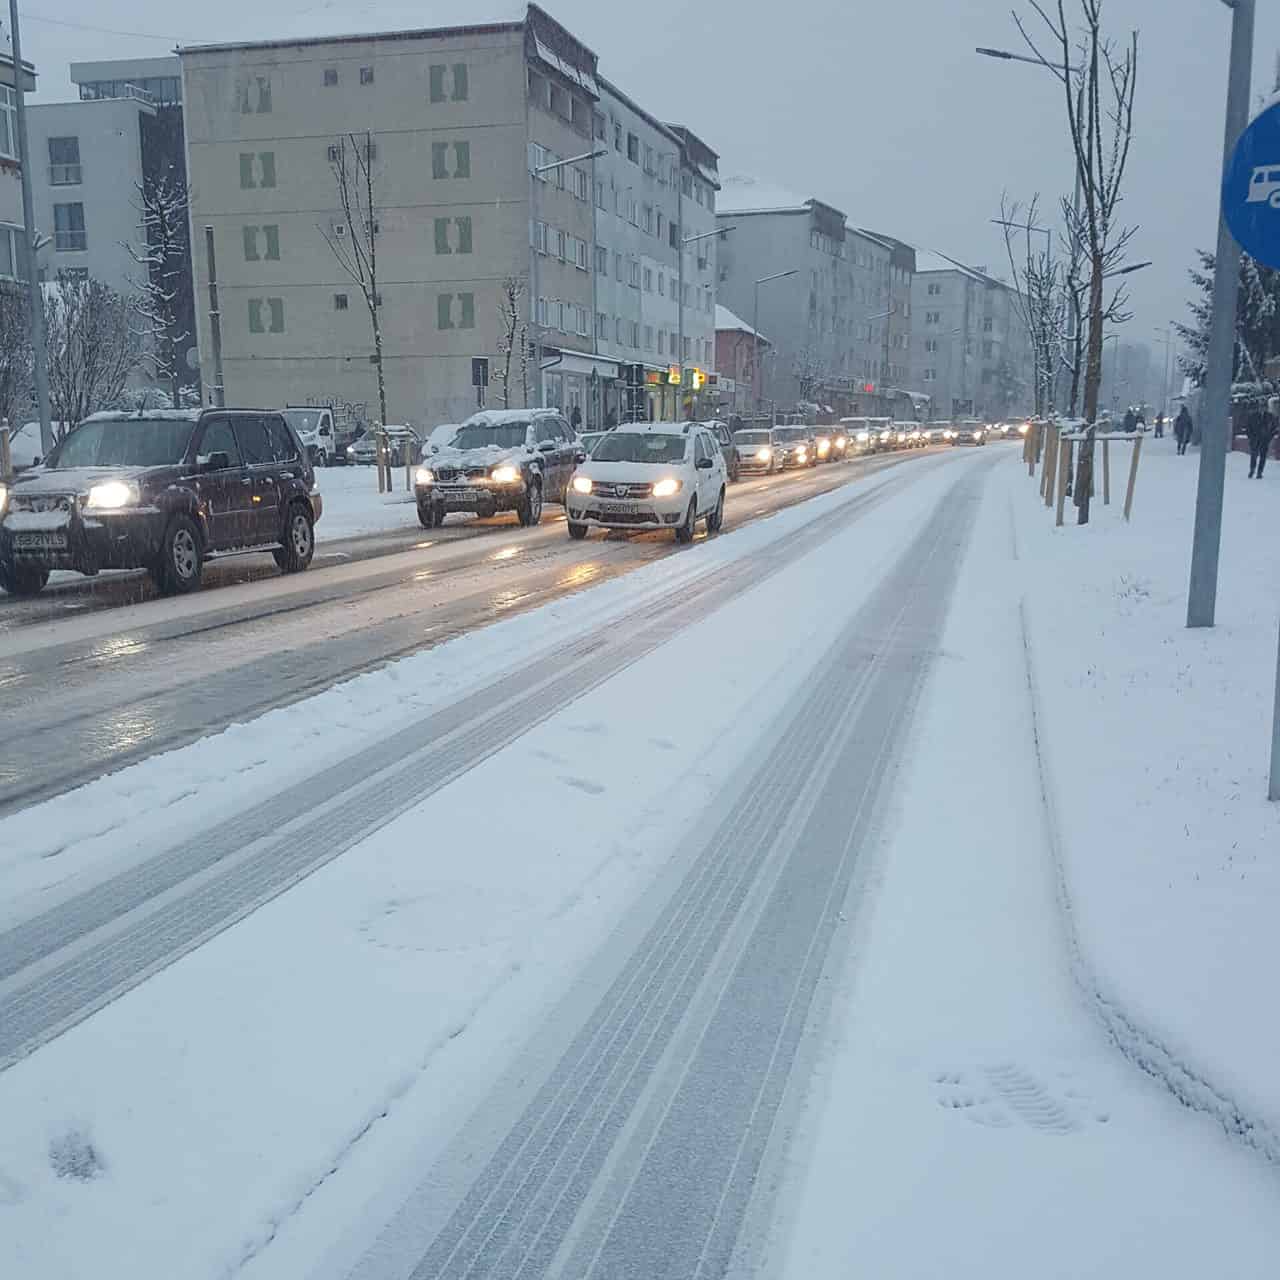 foto - trafic paralizat de ninsoare la primele ore în sibiu - șoferii au răbufnit: „ieri umblau plugurile, azi niciunul”